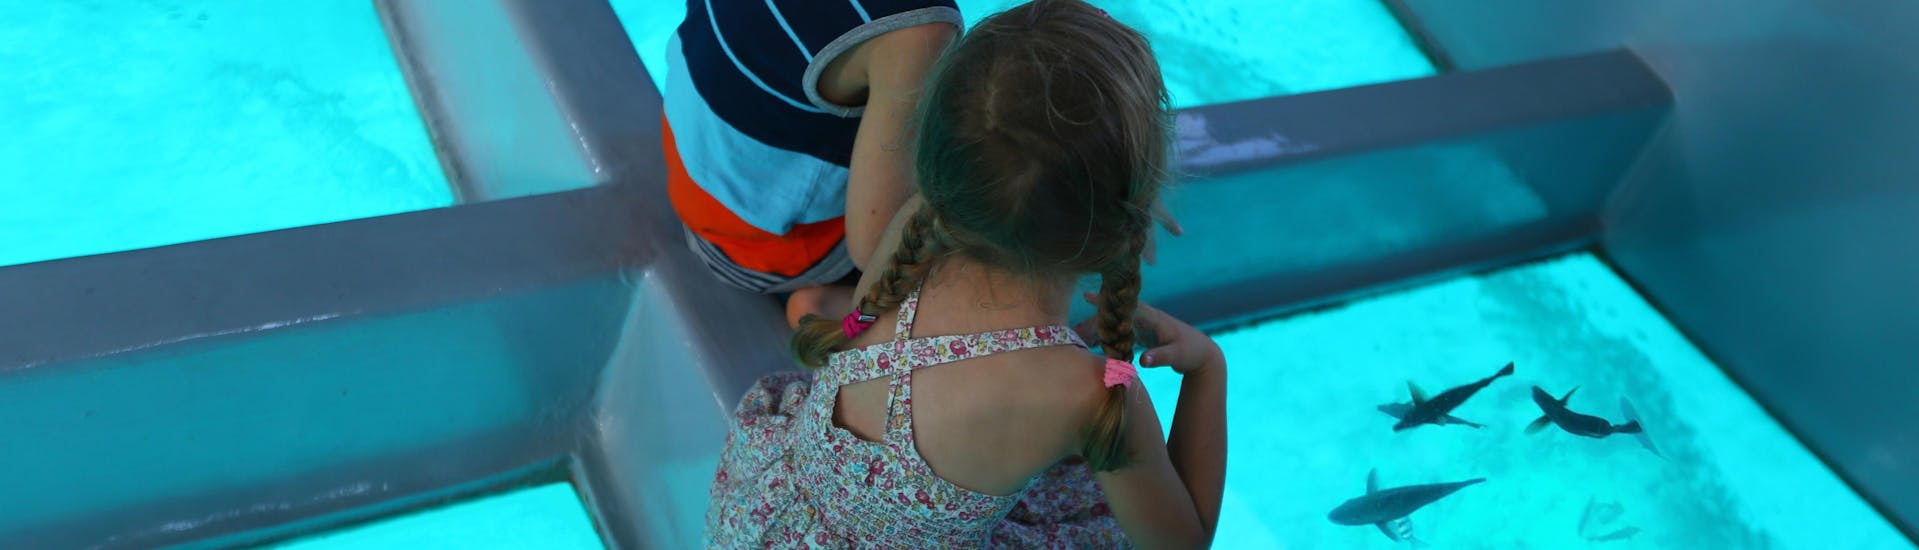 Due bambini osservano il fondale marino durante un'escursione in barca con fondo di vetro.